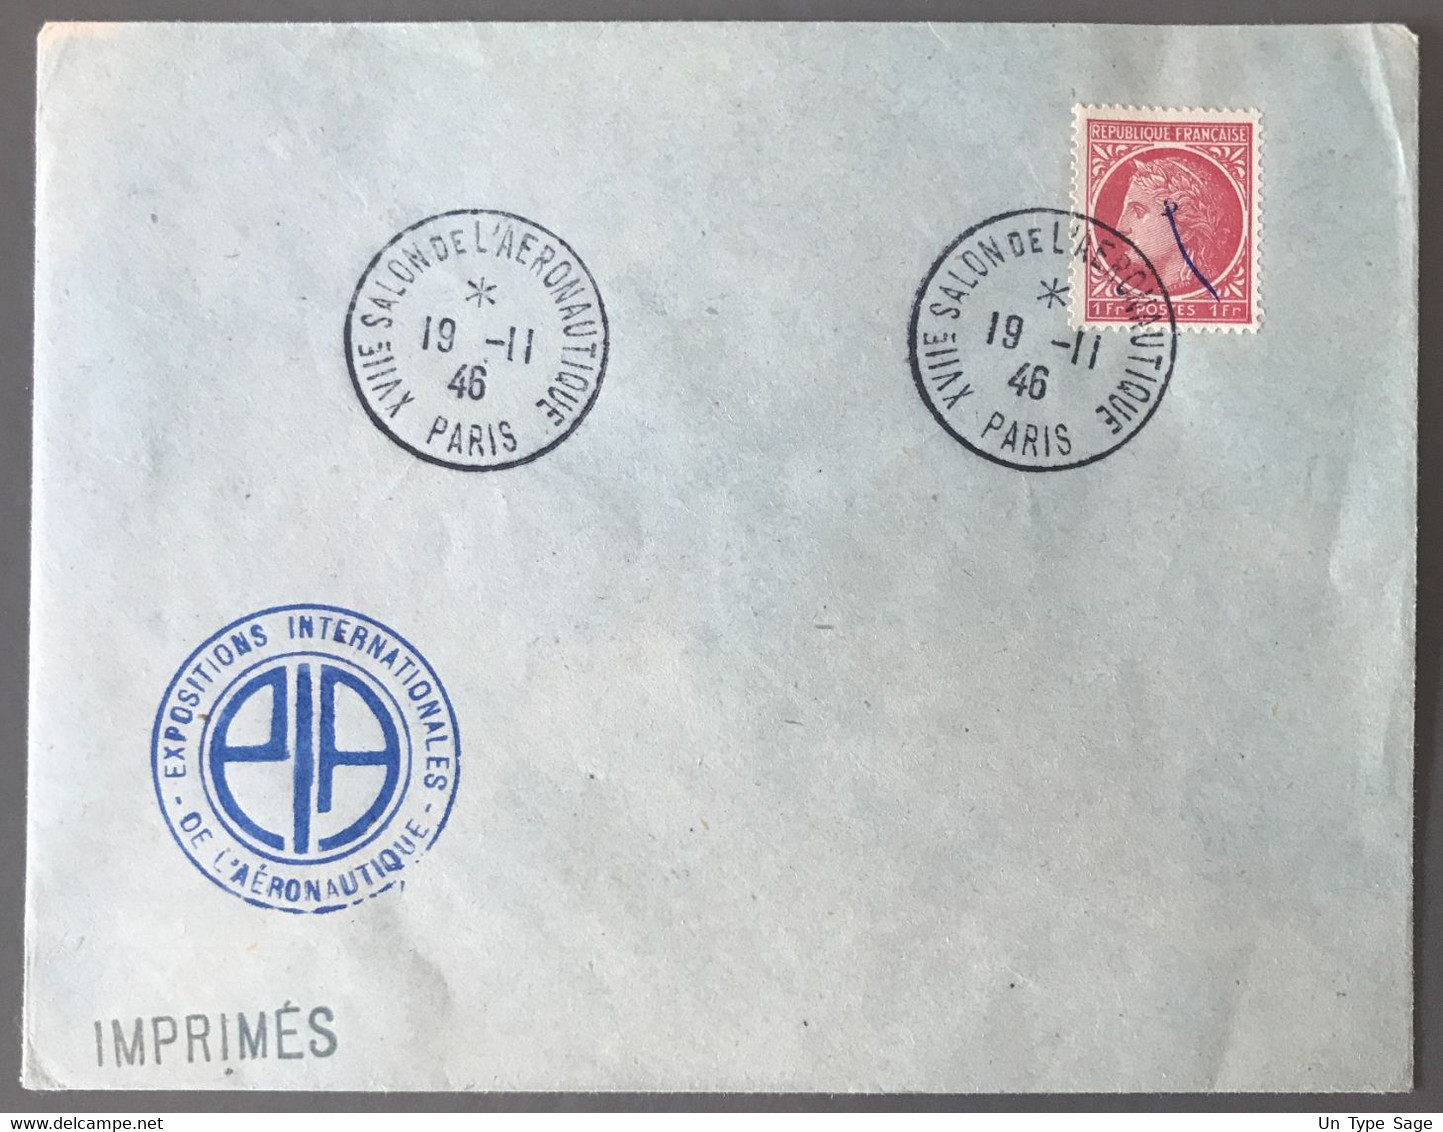 France TAD XVIIe SALON DE L'AERONAUTIQUE PARIS 19.11.1946 Sur Enveloppe - (W1051) - 1960-.... Covers & Documents